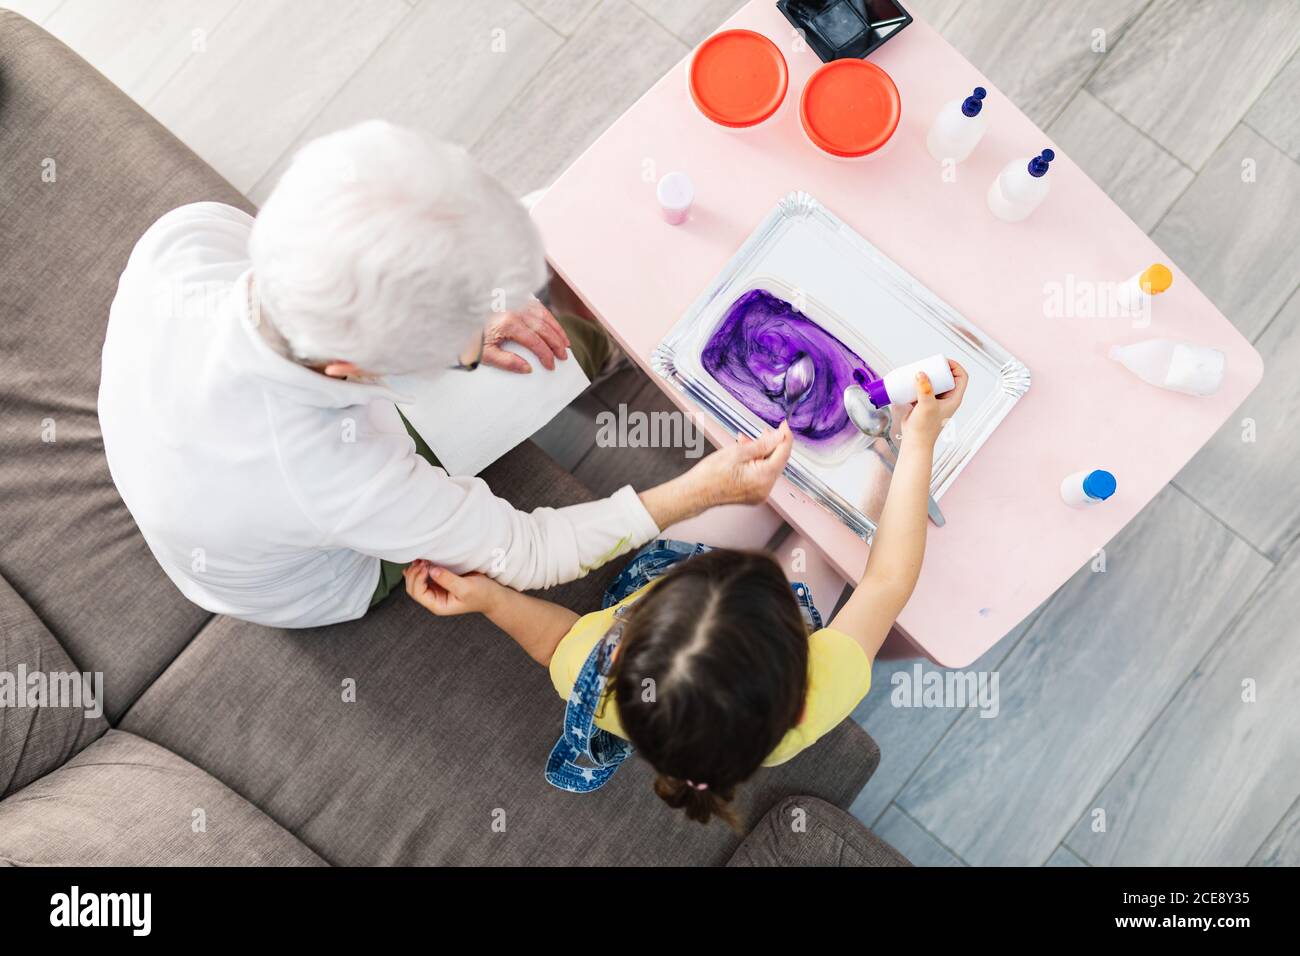 Draufsicht auf grauhaarige Großeltern Rühren bunten Schleim Mischung Mit Löffel in Kunststoff-Behälter, während kleine Mädchen Zugabe von Farbstoff Von Flasche und sitzen auf Sofa in der Wohnung Stockfoto